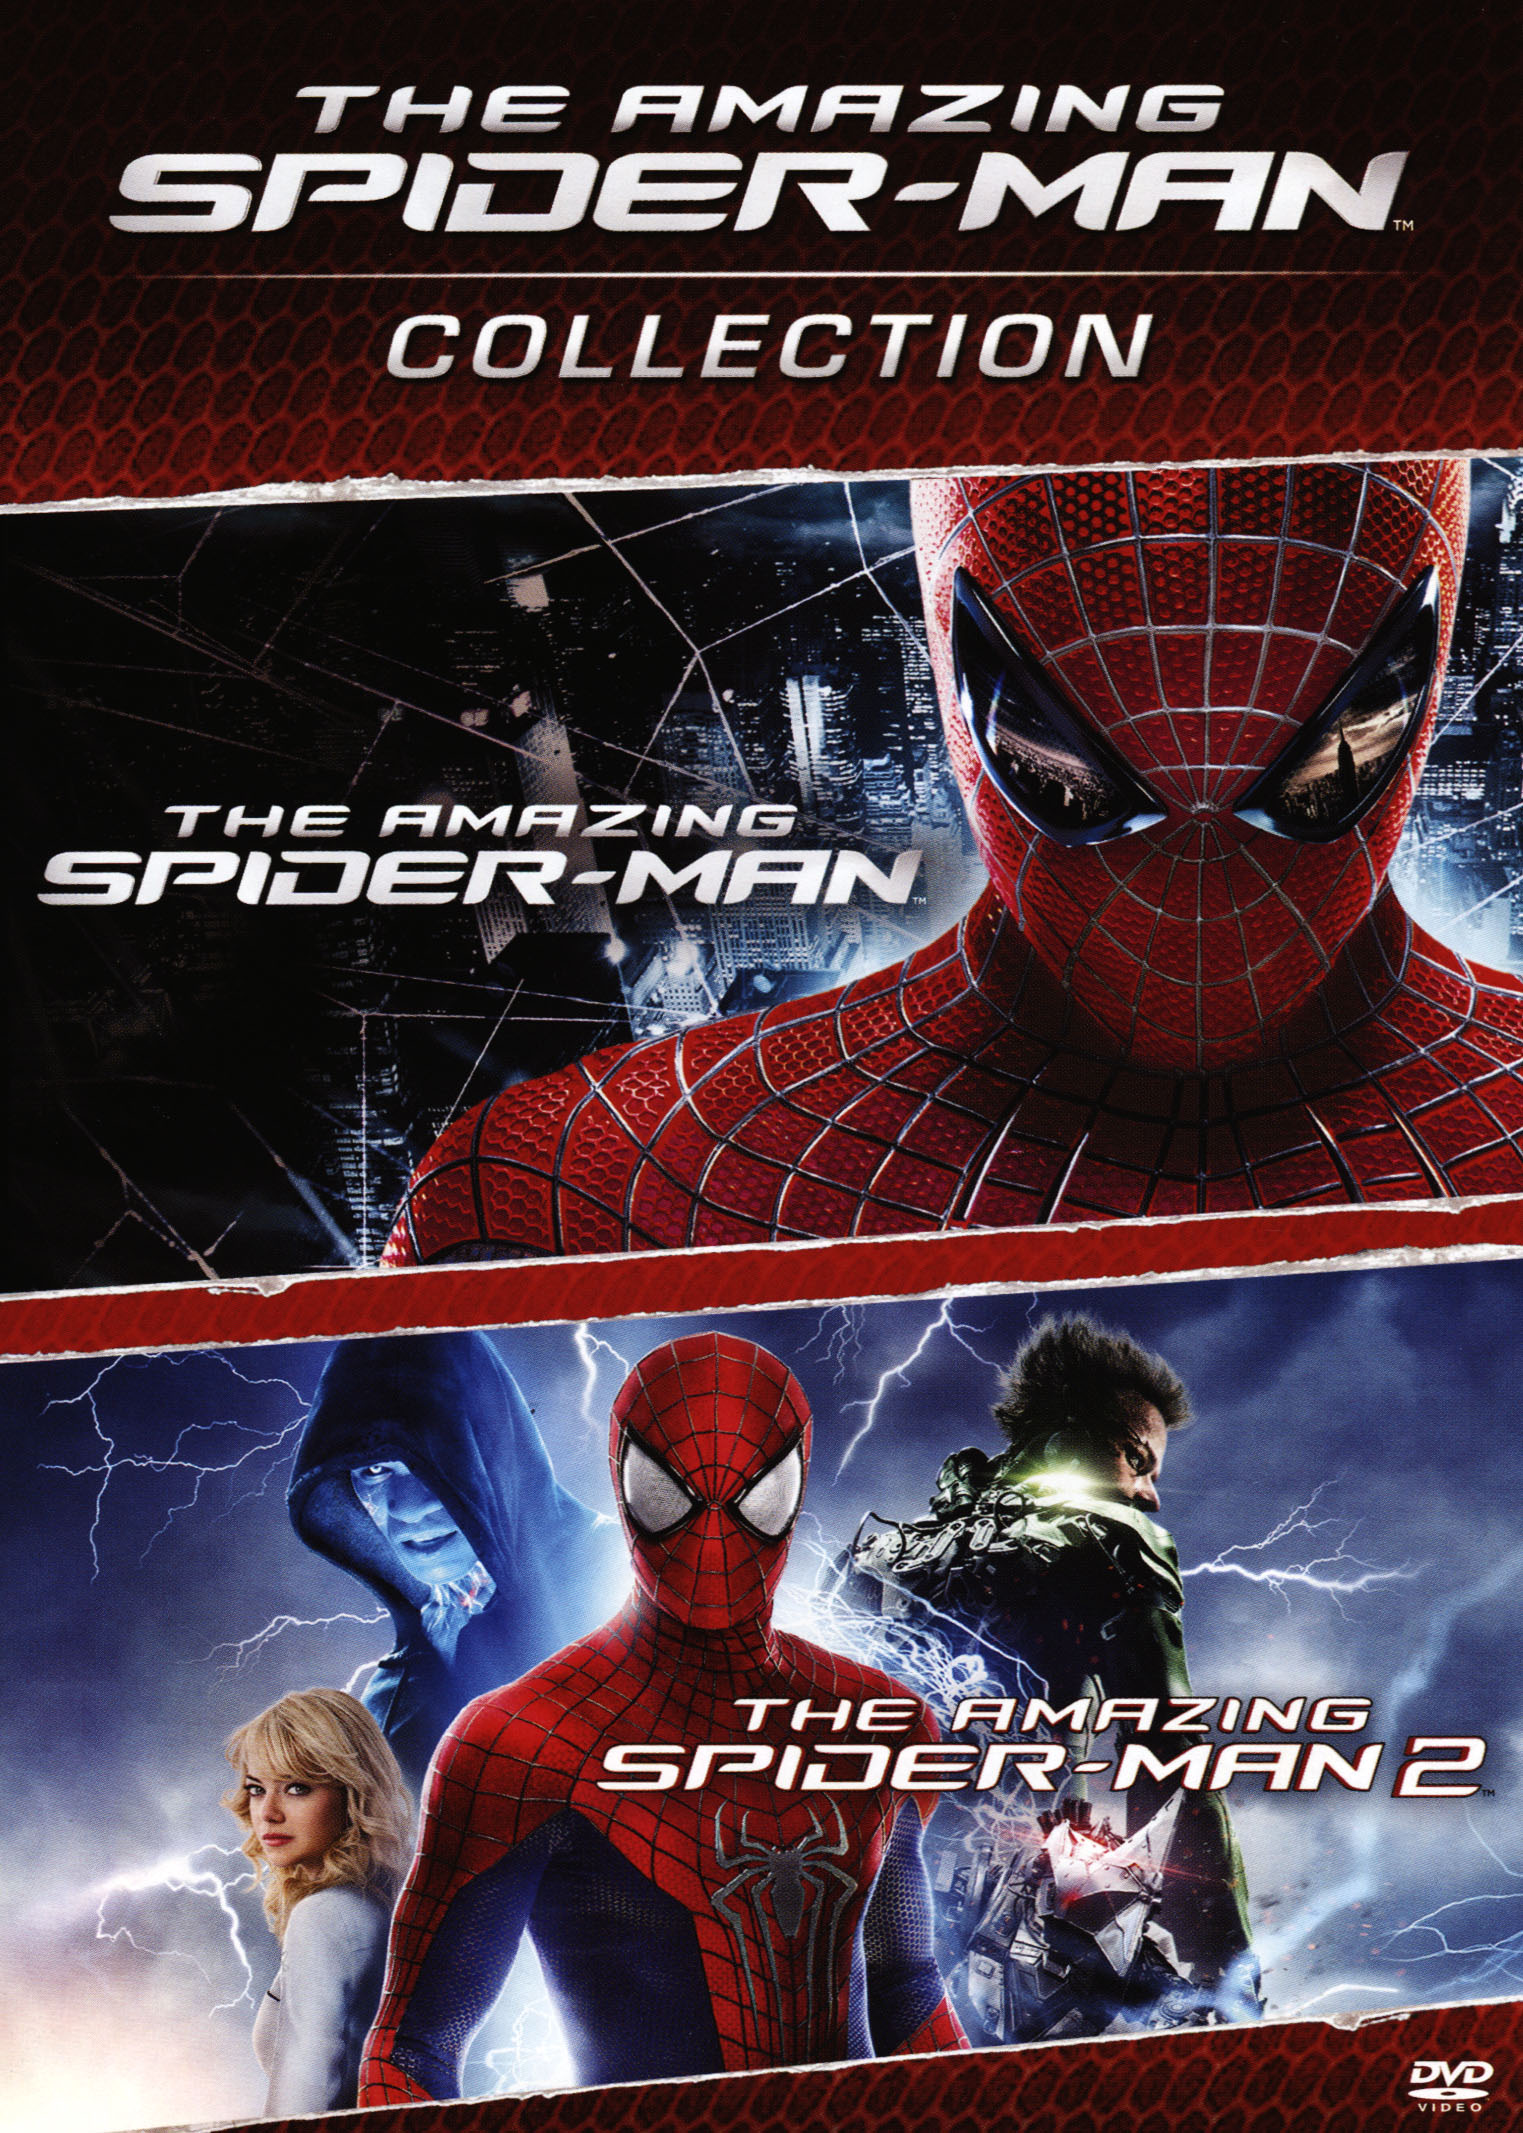 The Amazing Spider-Man/The Amazing Spider-Man 2 [2 Discs] [DVD] - Best Buy